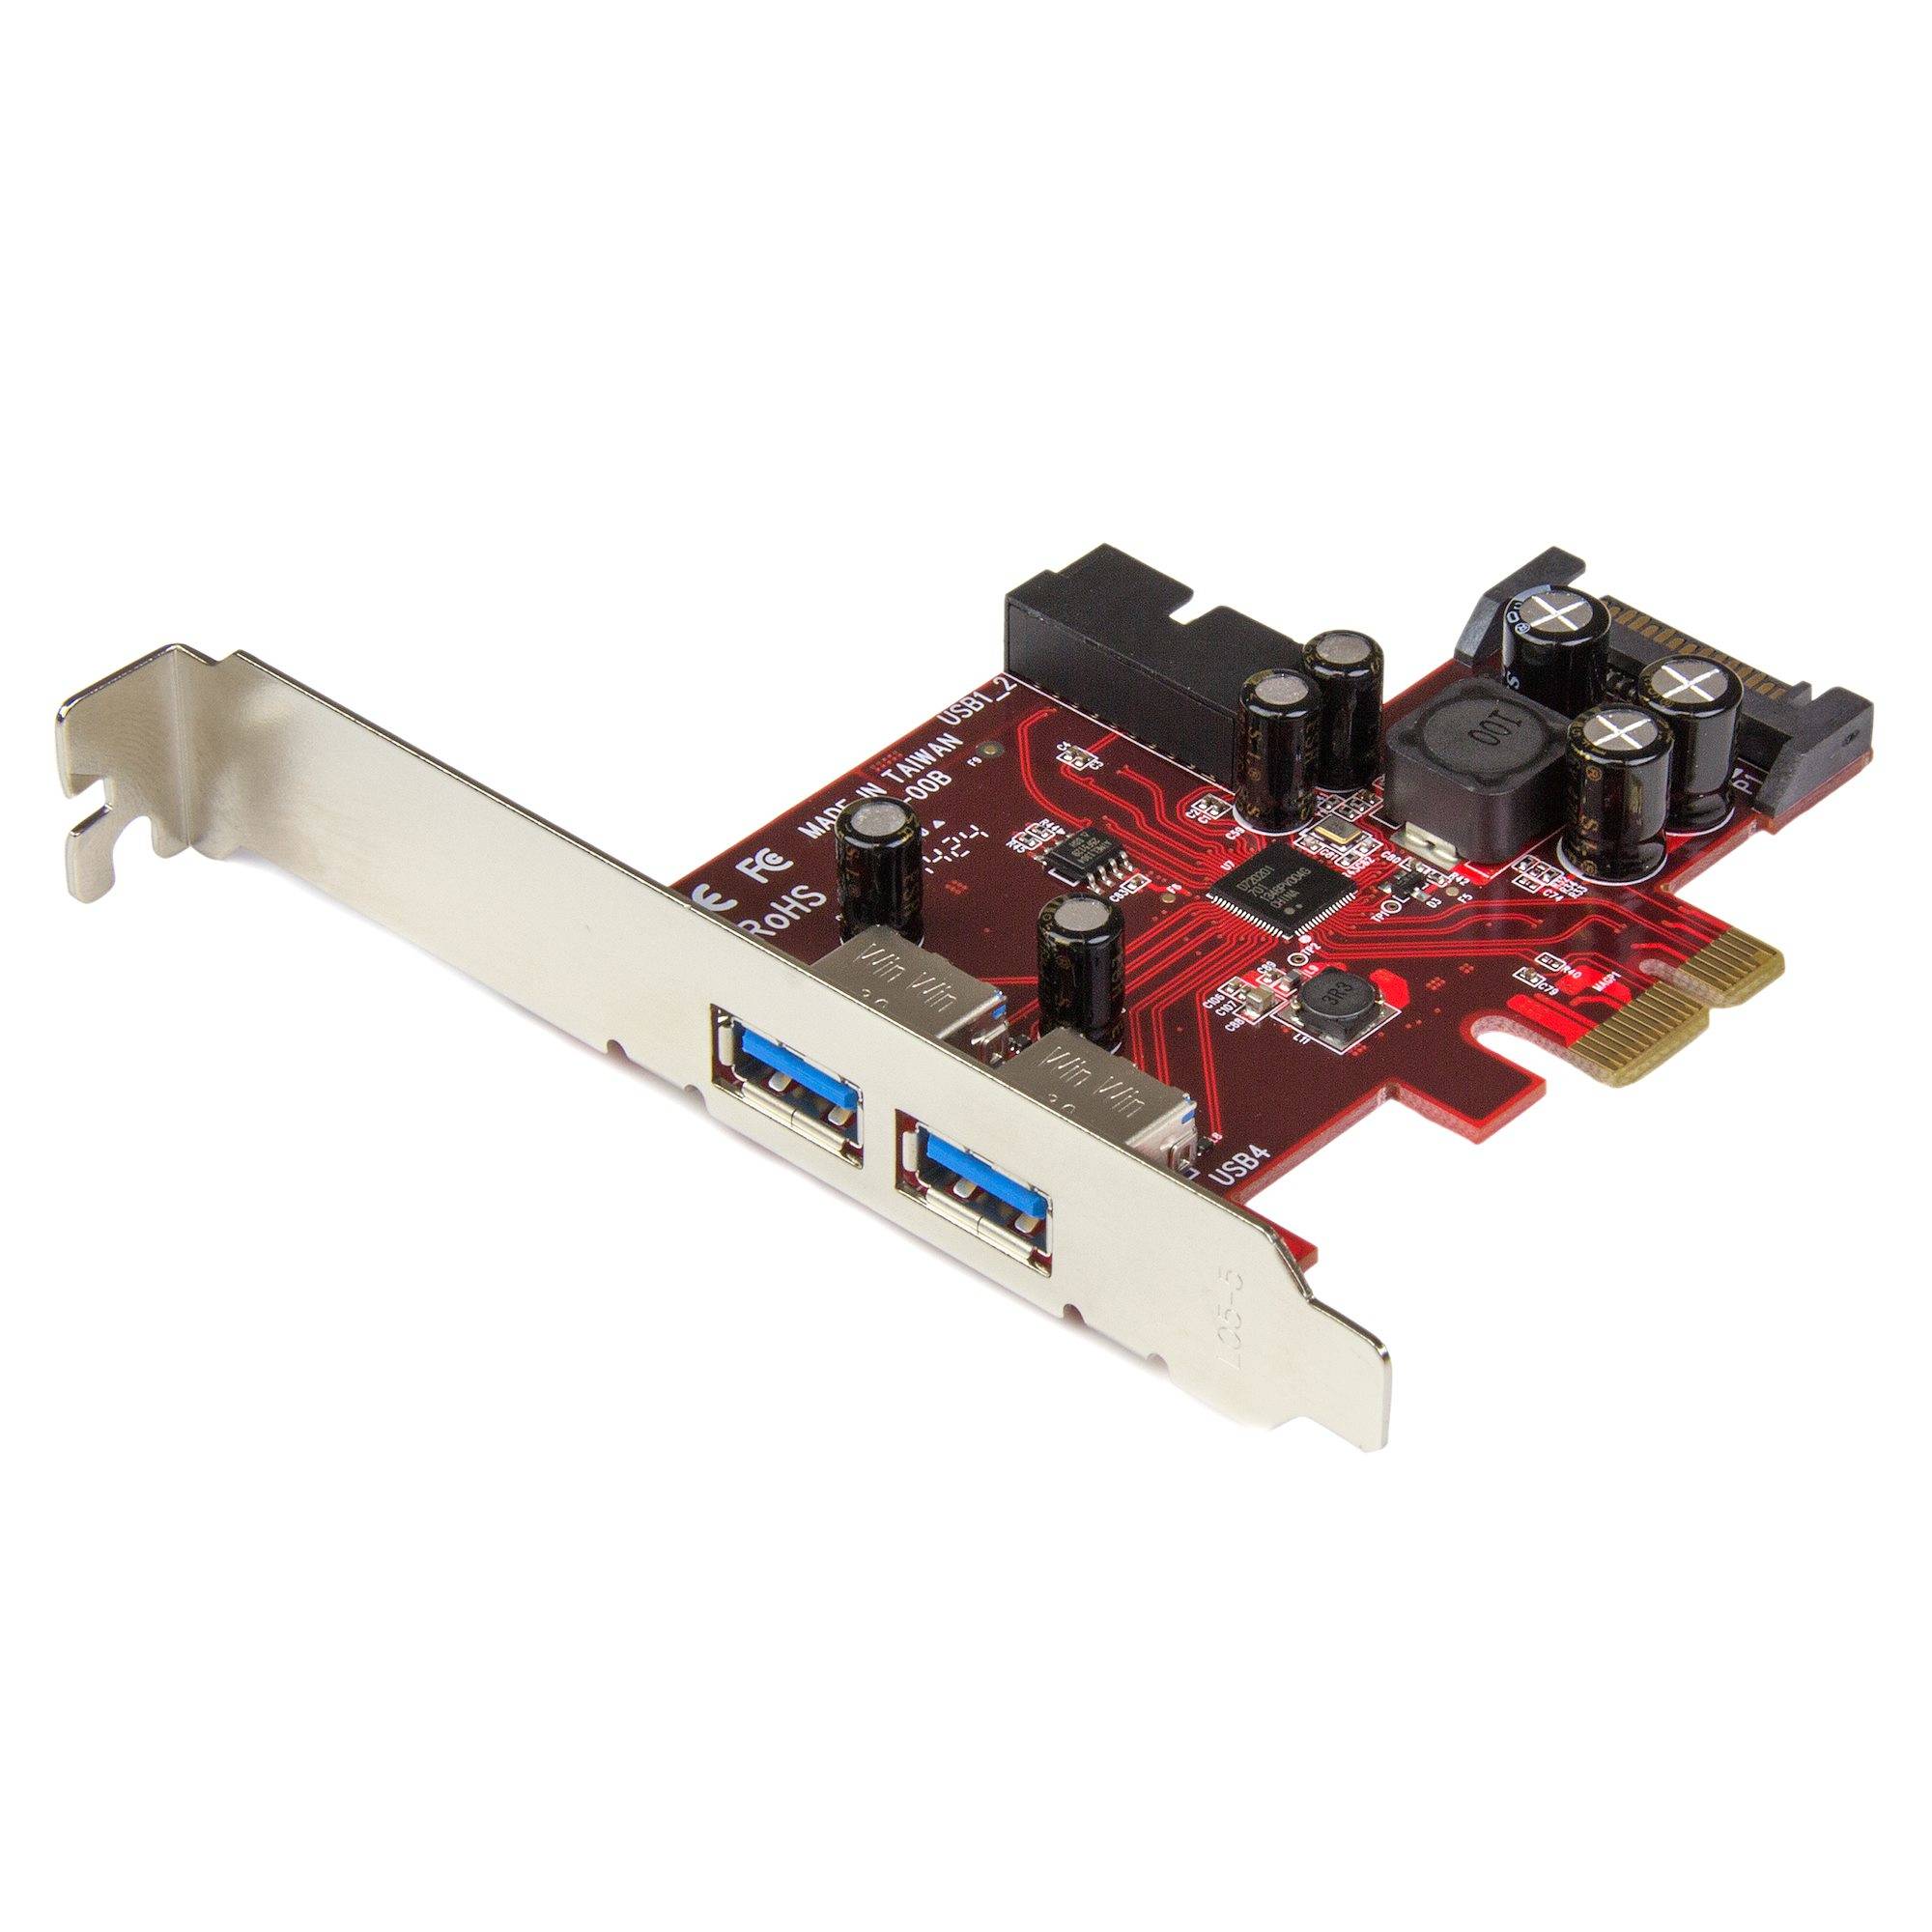 Rca Informatique - Image du produit : CARTE CONTROLEUR PCIE 4 PORTS USB 3.0 AVEC UASP ET ALIM. SATA